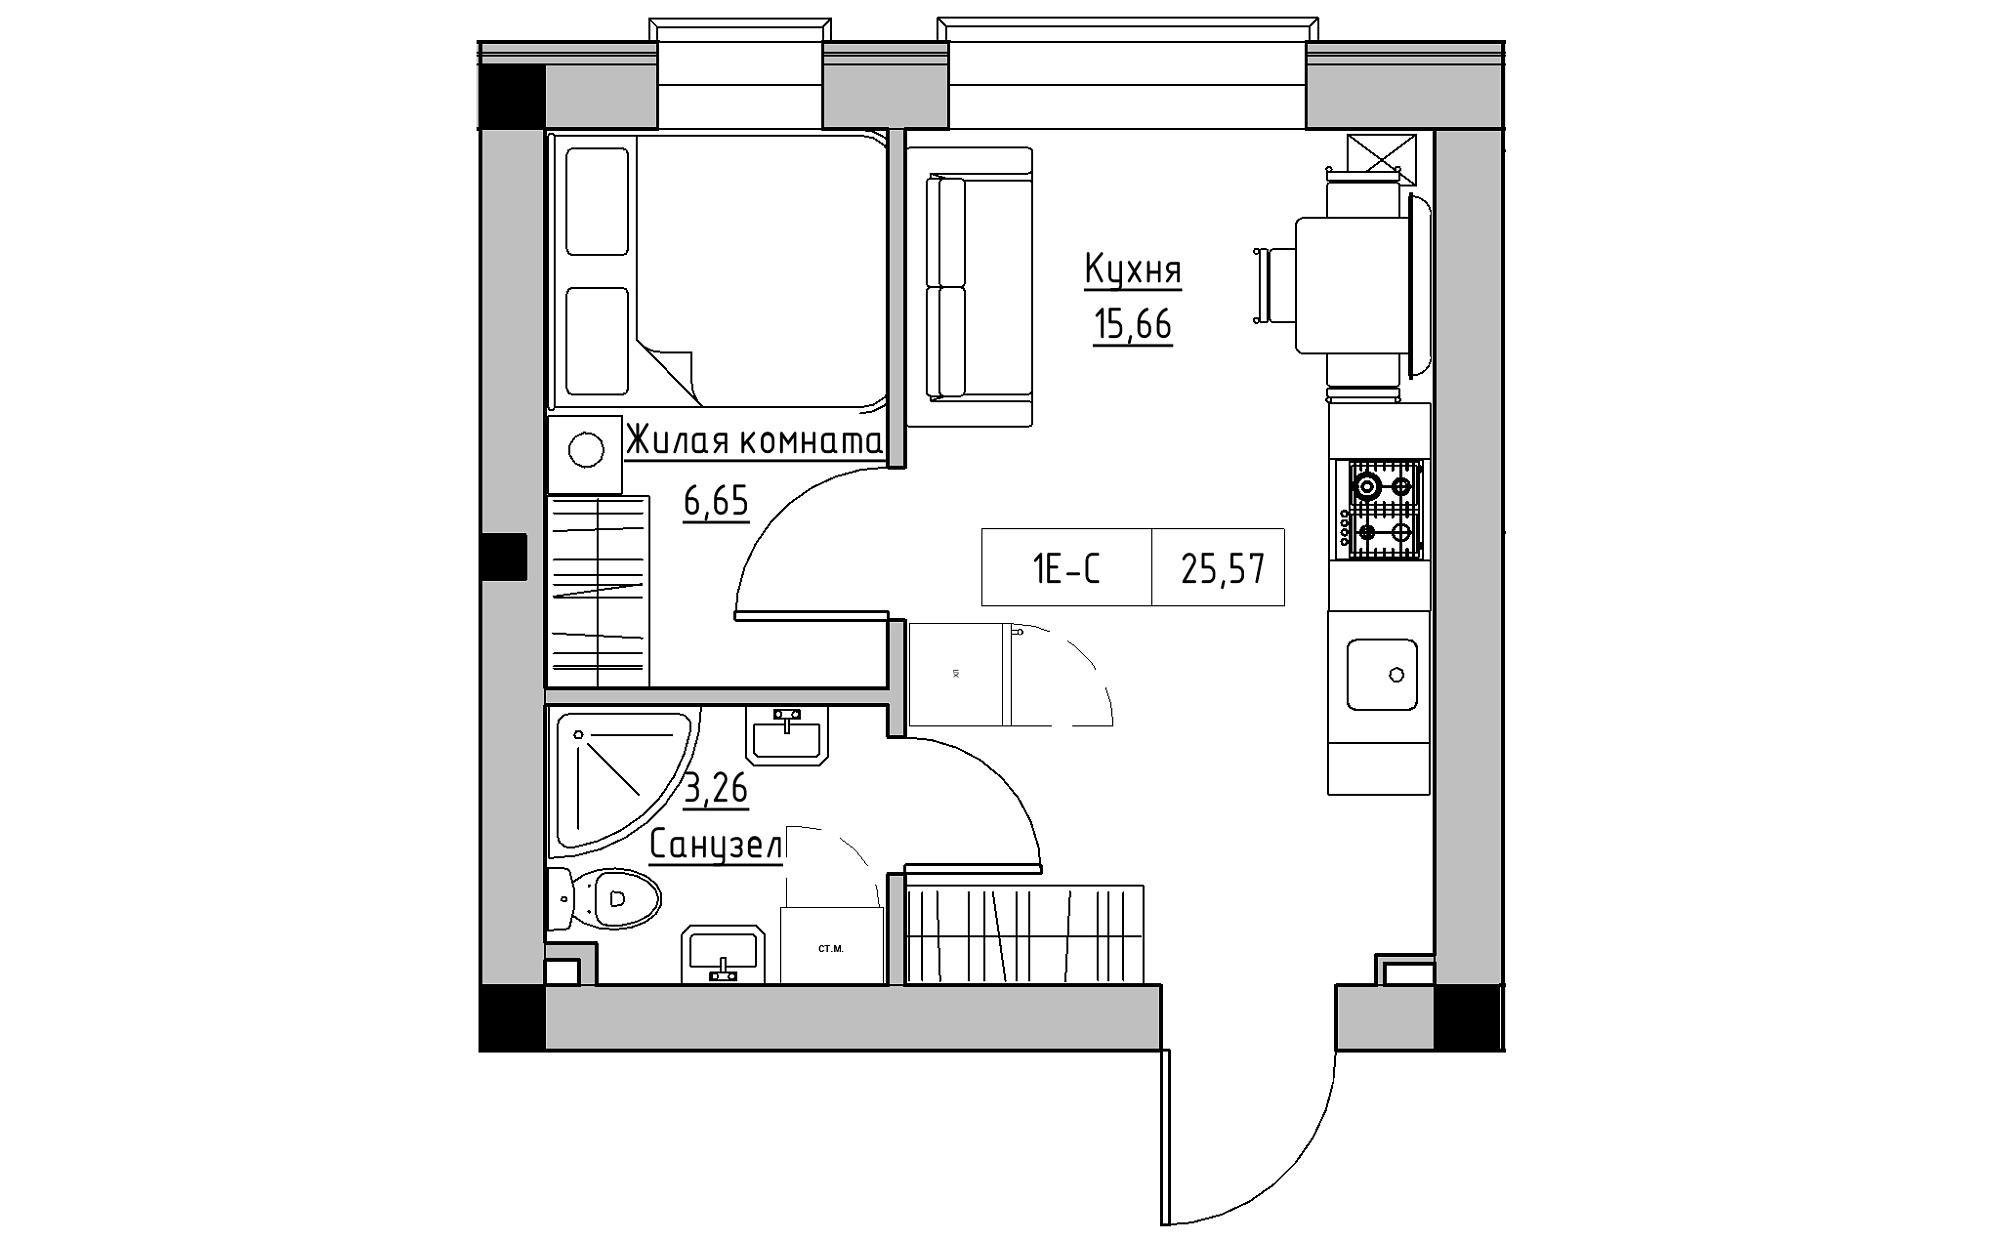 Планировка 1-к квартира площей 25.57м2, KS-022-05/0004.